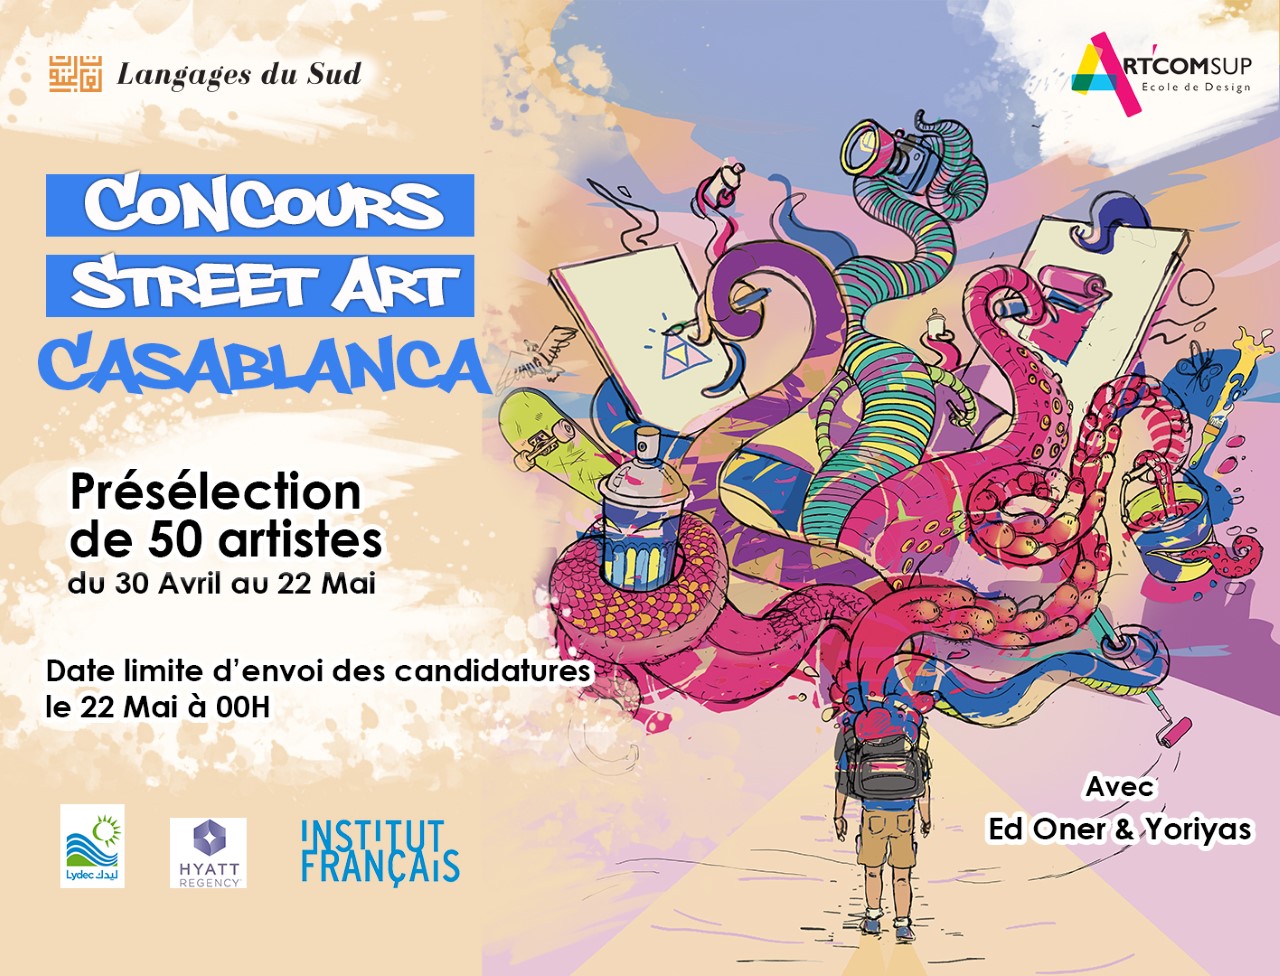 "Street Art Casablanca" lance son concours, du 30 avril au 22 mai